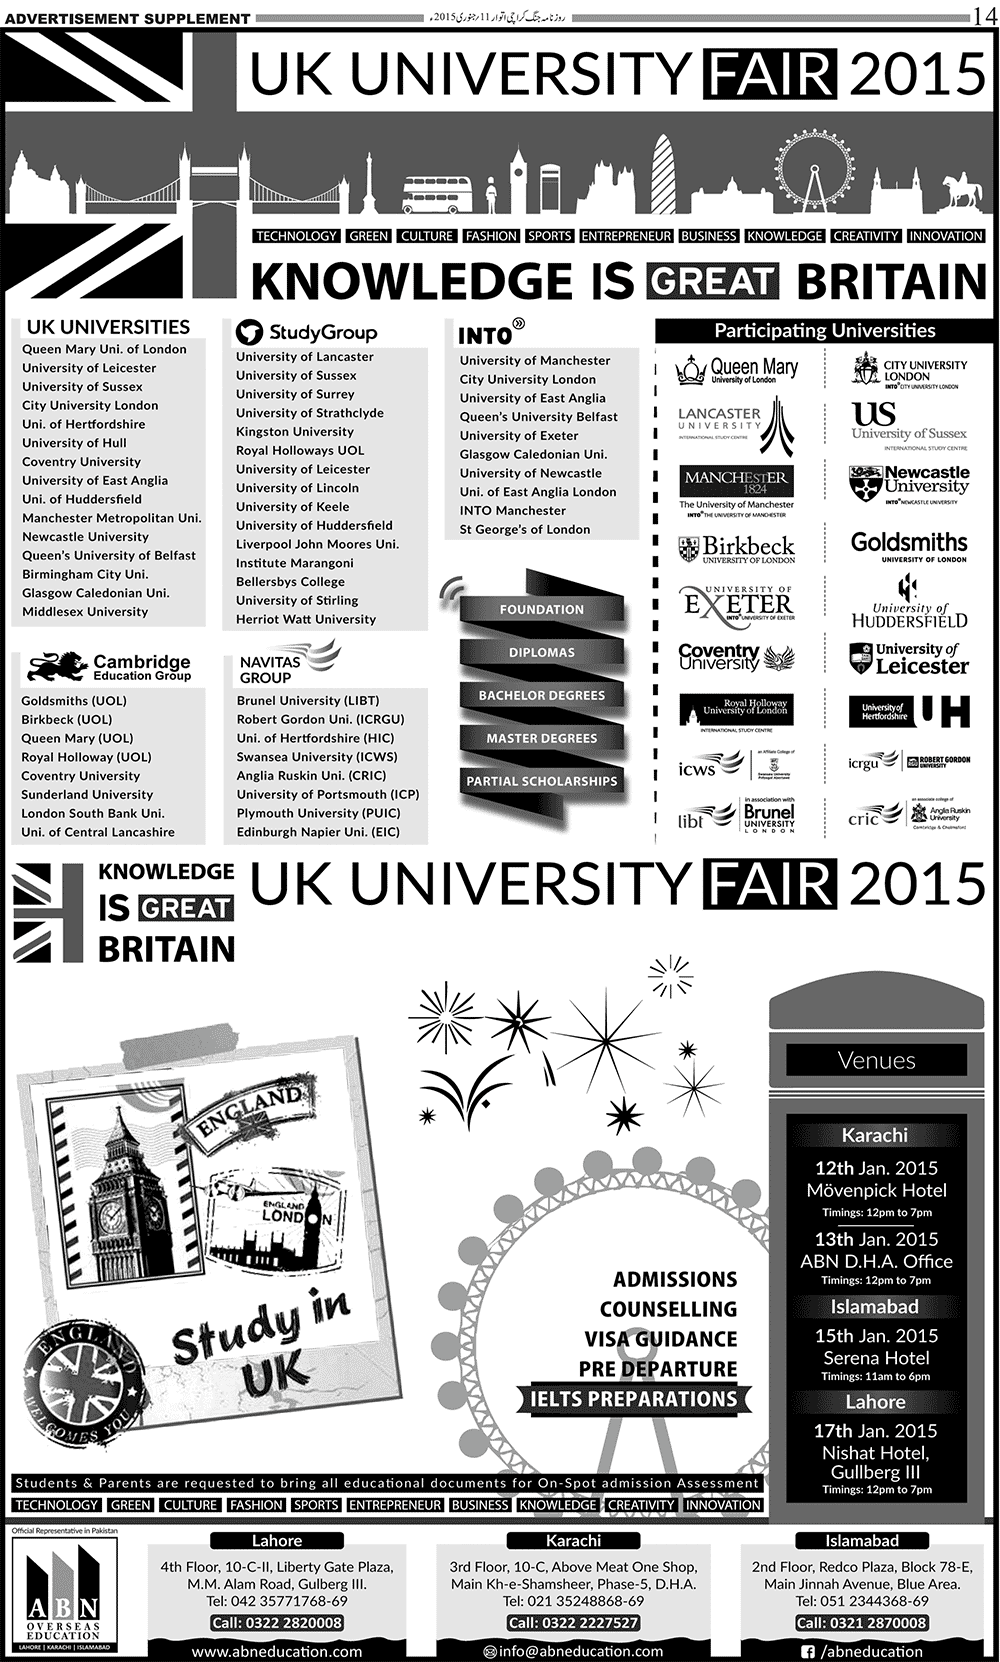 UK University Fair 2015 Karachi, Islamabad, Lahore